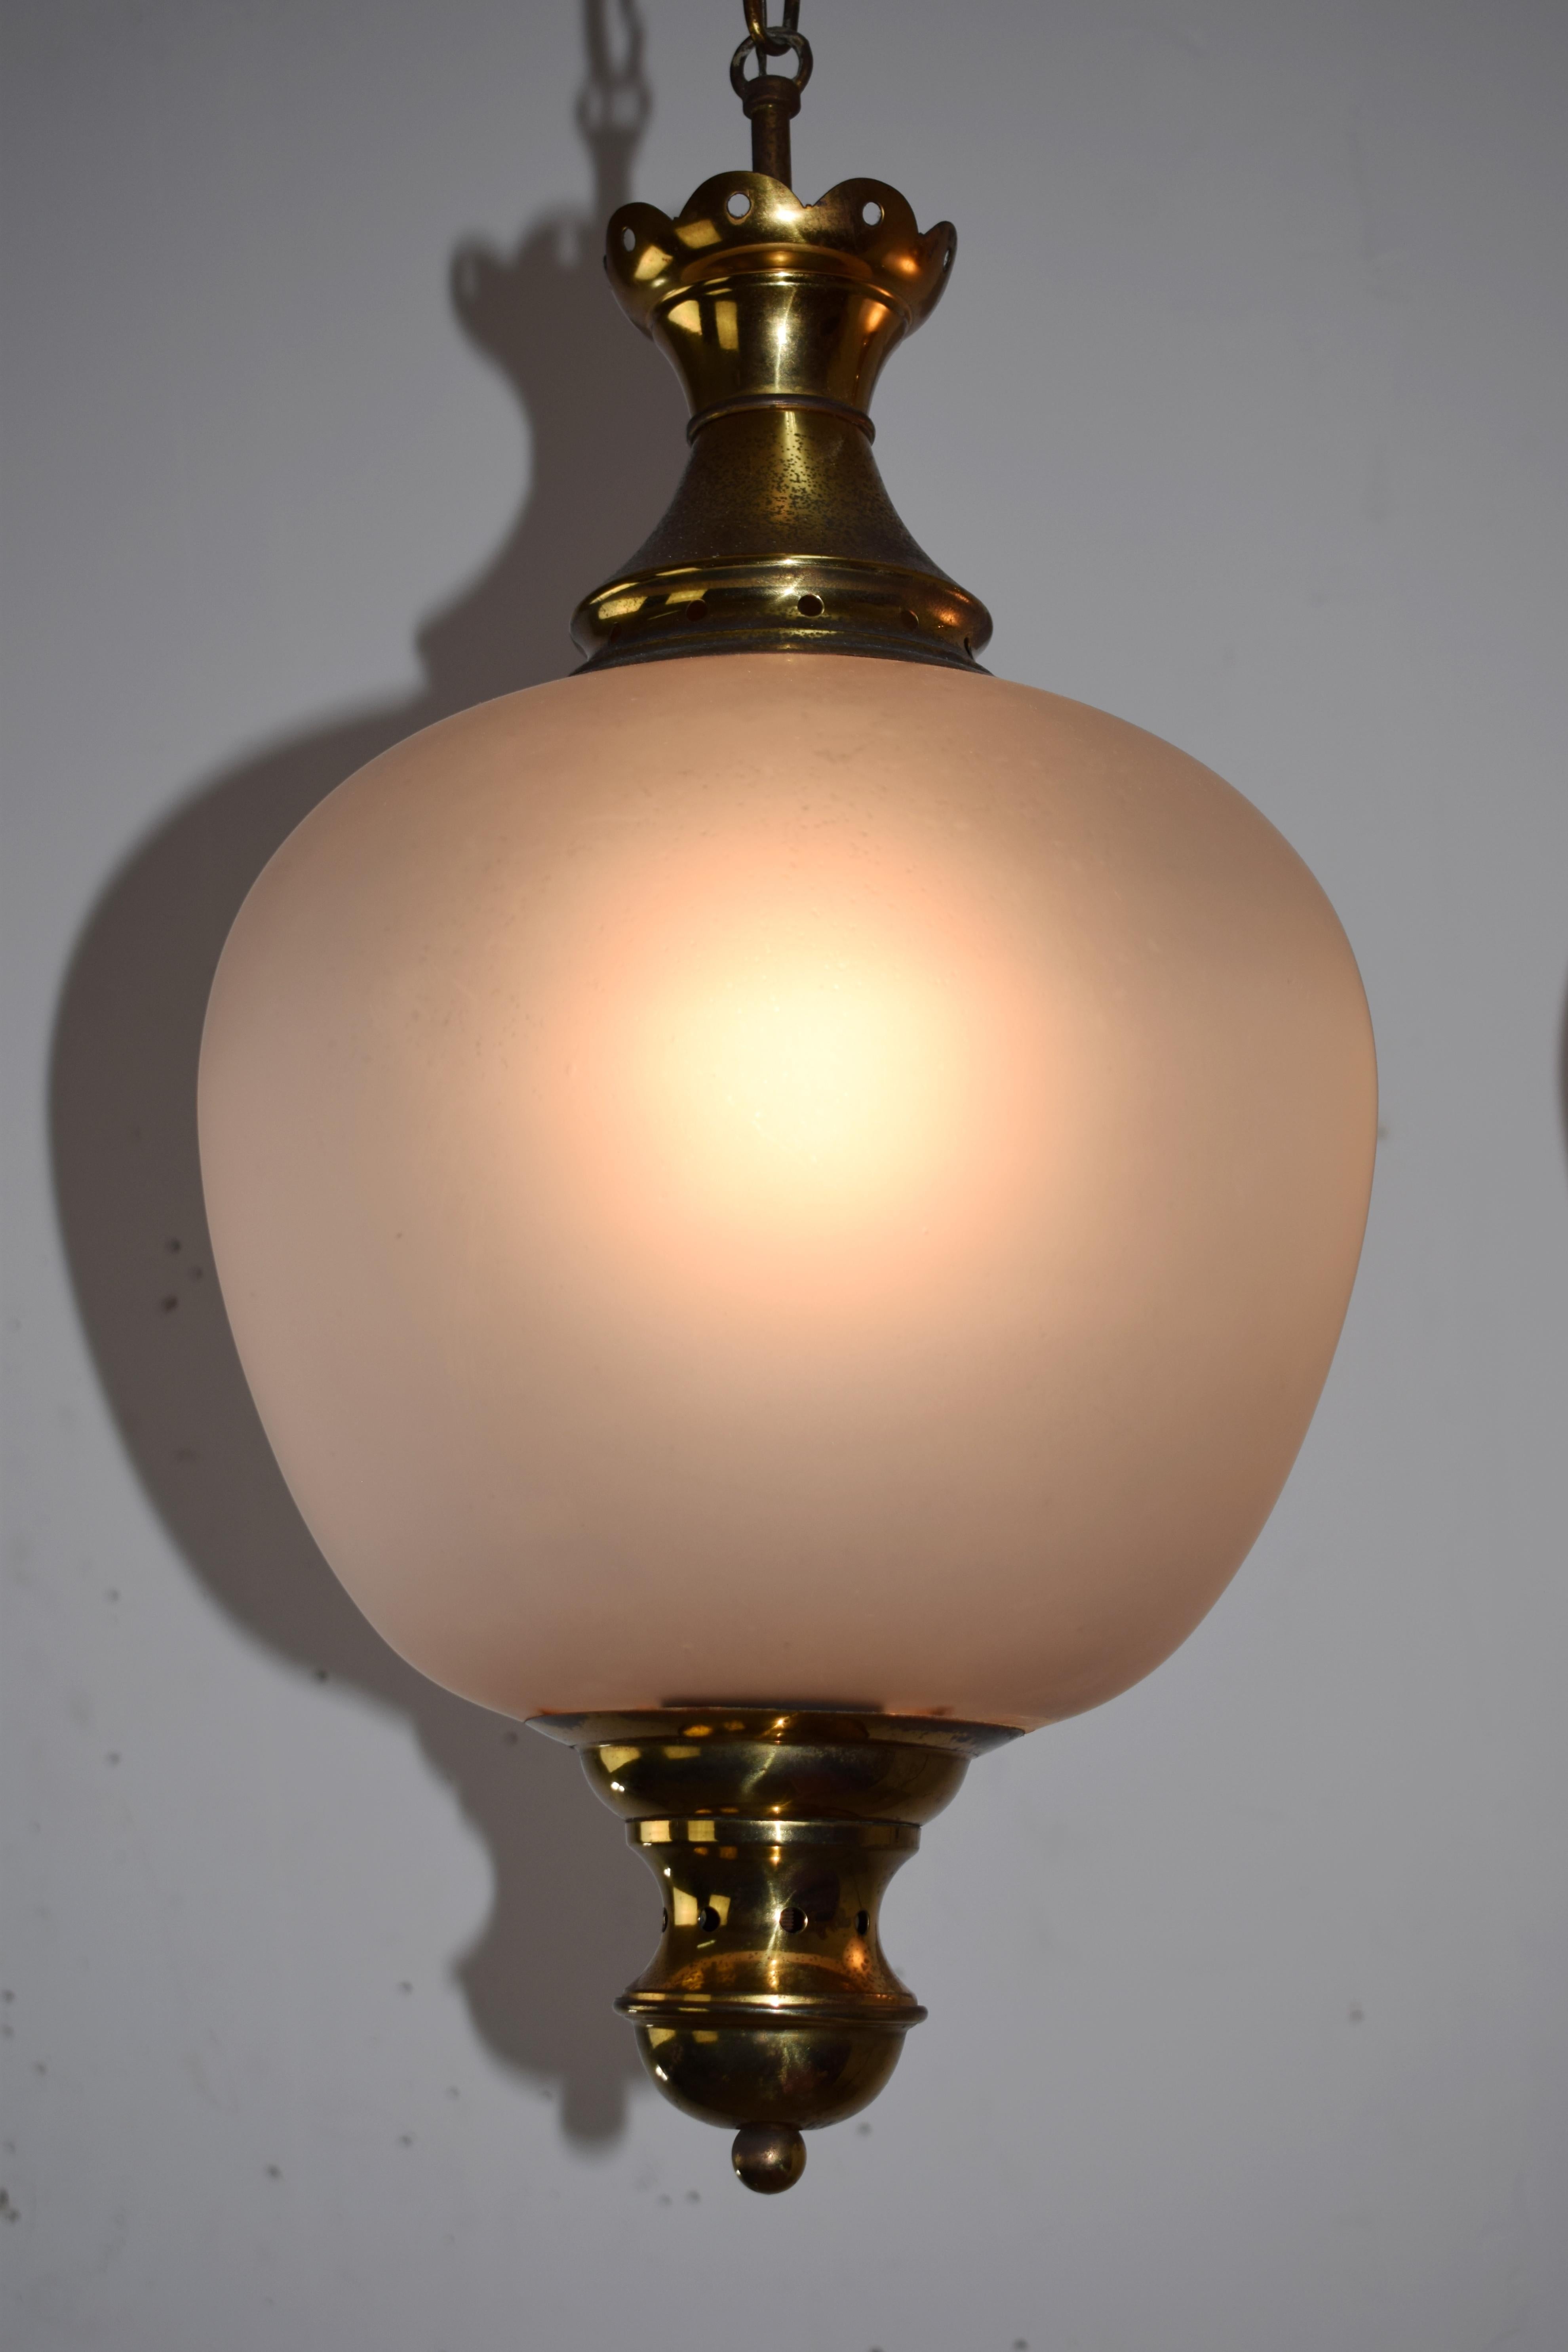 Italian pendant lamp by Luigi Caccia Dominioni, 1970s.
Dimensions: H= 80 cm; D= 28 cm.